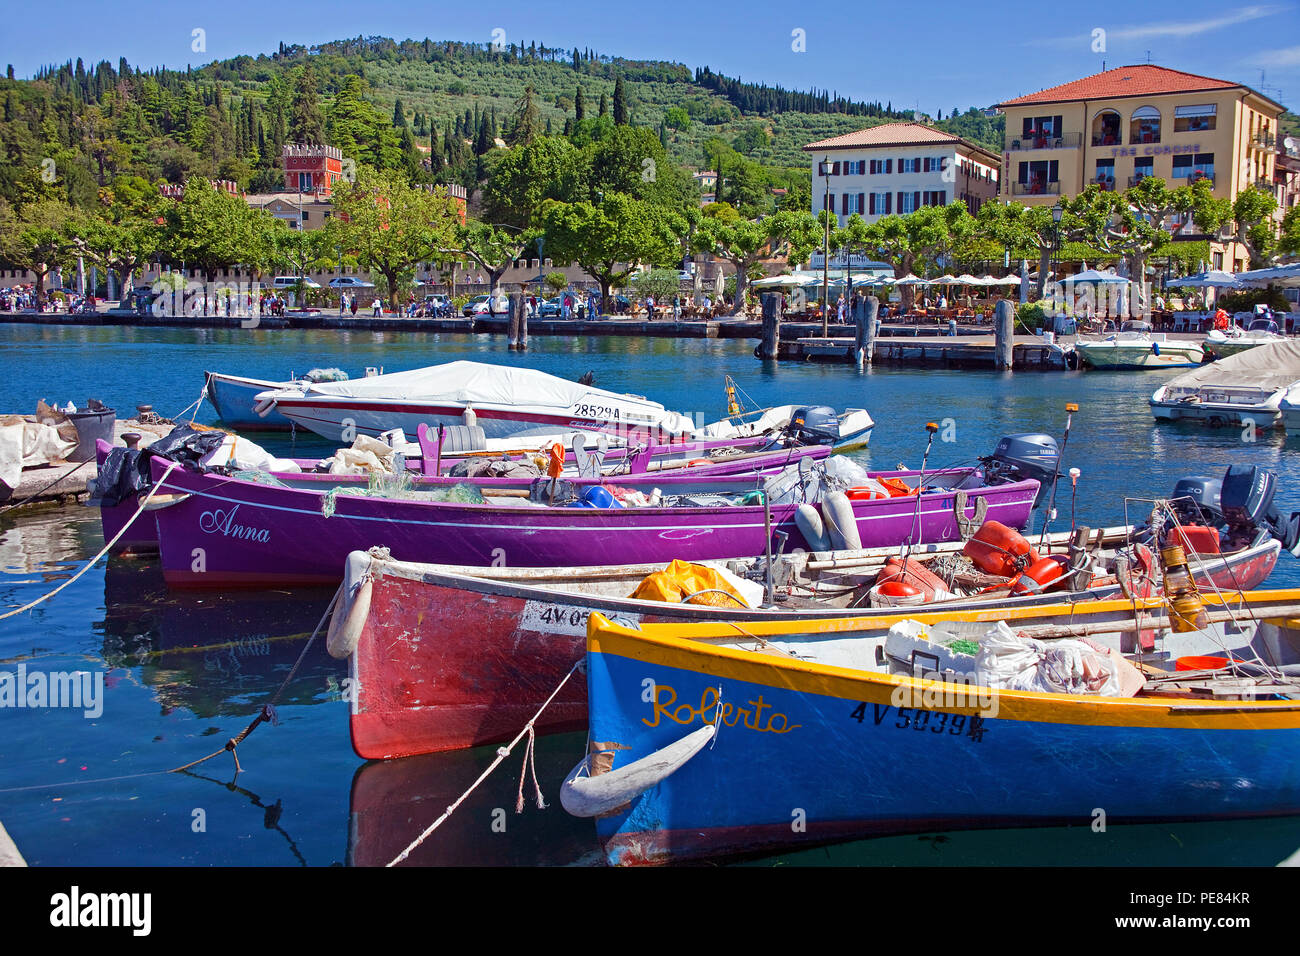 Boote im Hafen von Garda, gardasee, Provinz Verona, Italien | Barche presso il porto di Garda, provincia di Verona, Lago di Garda, Lombardia, Italia Foto Stock